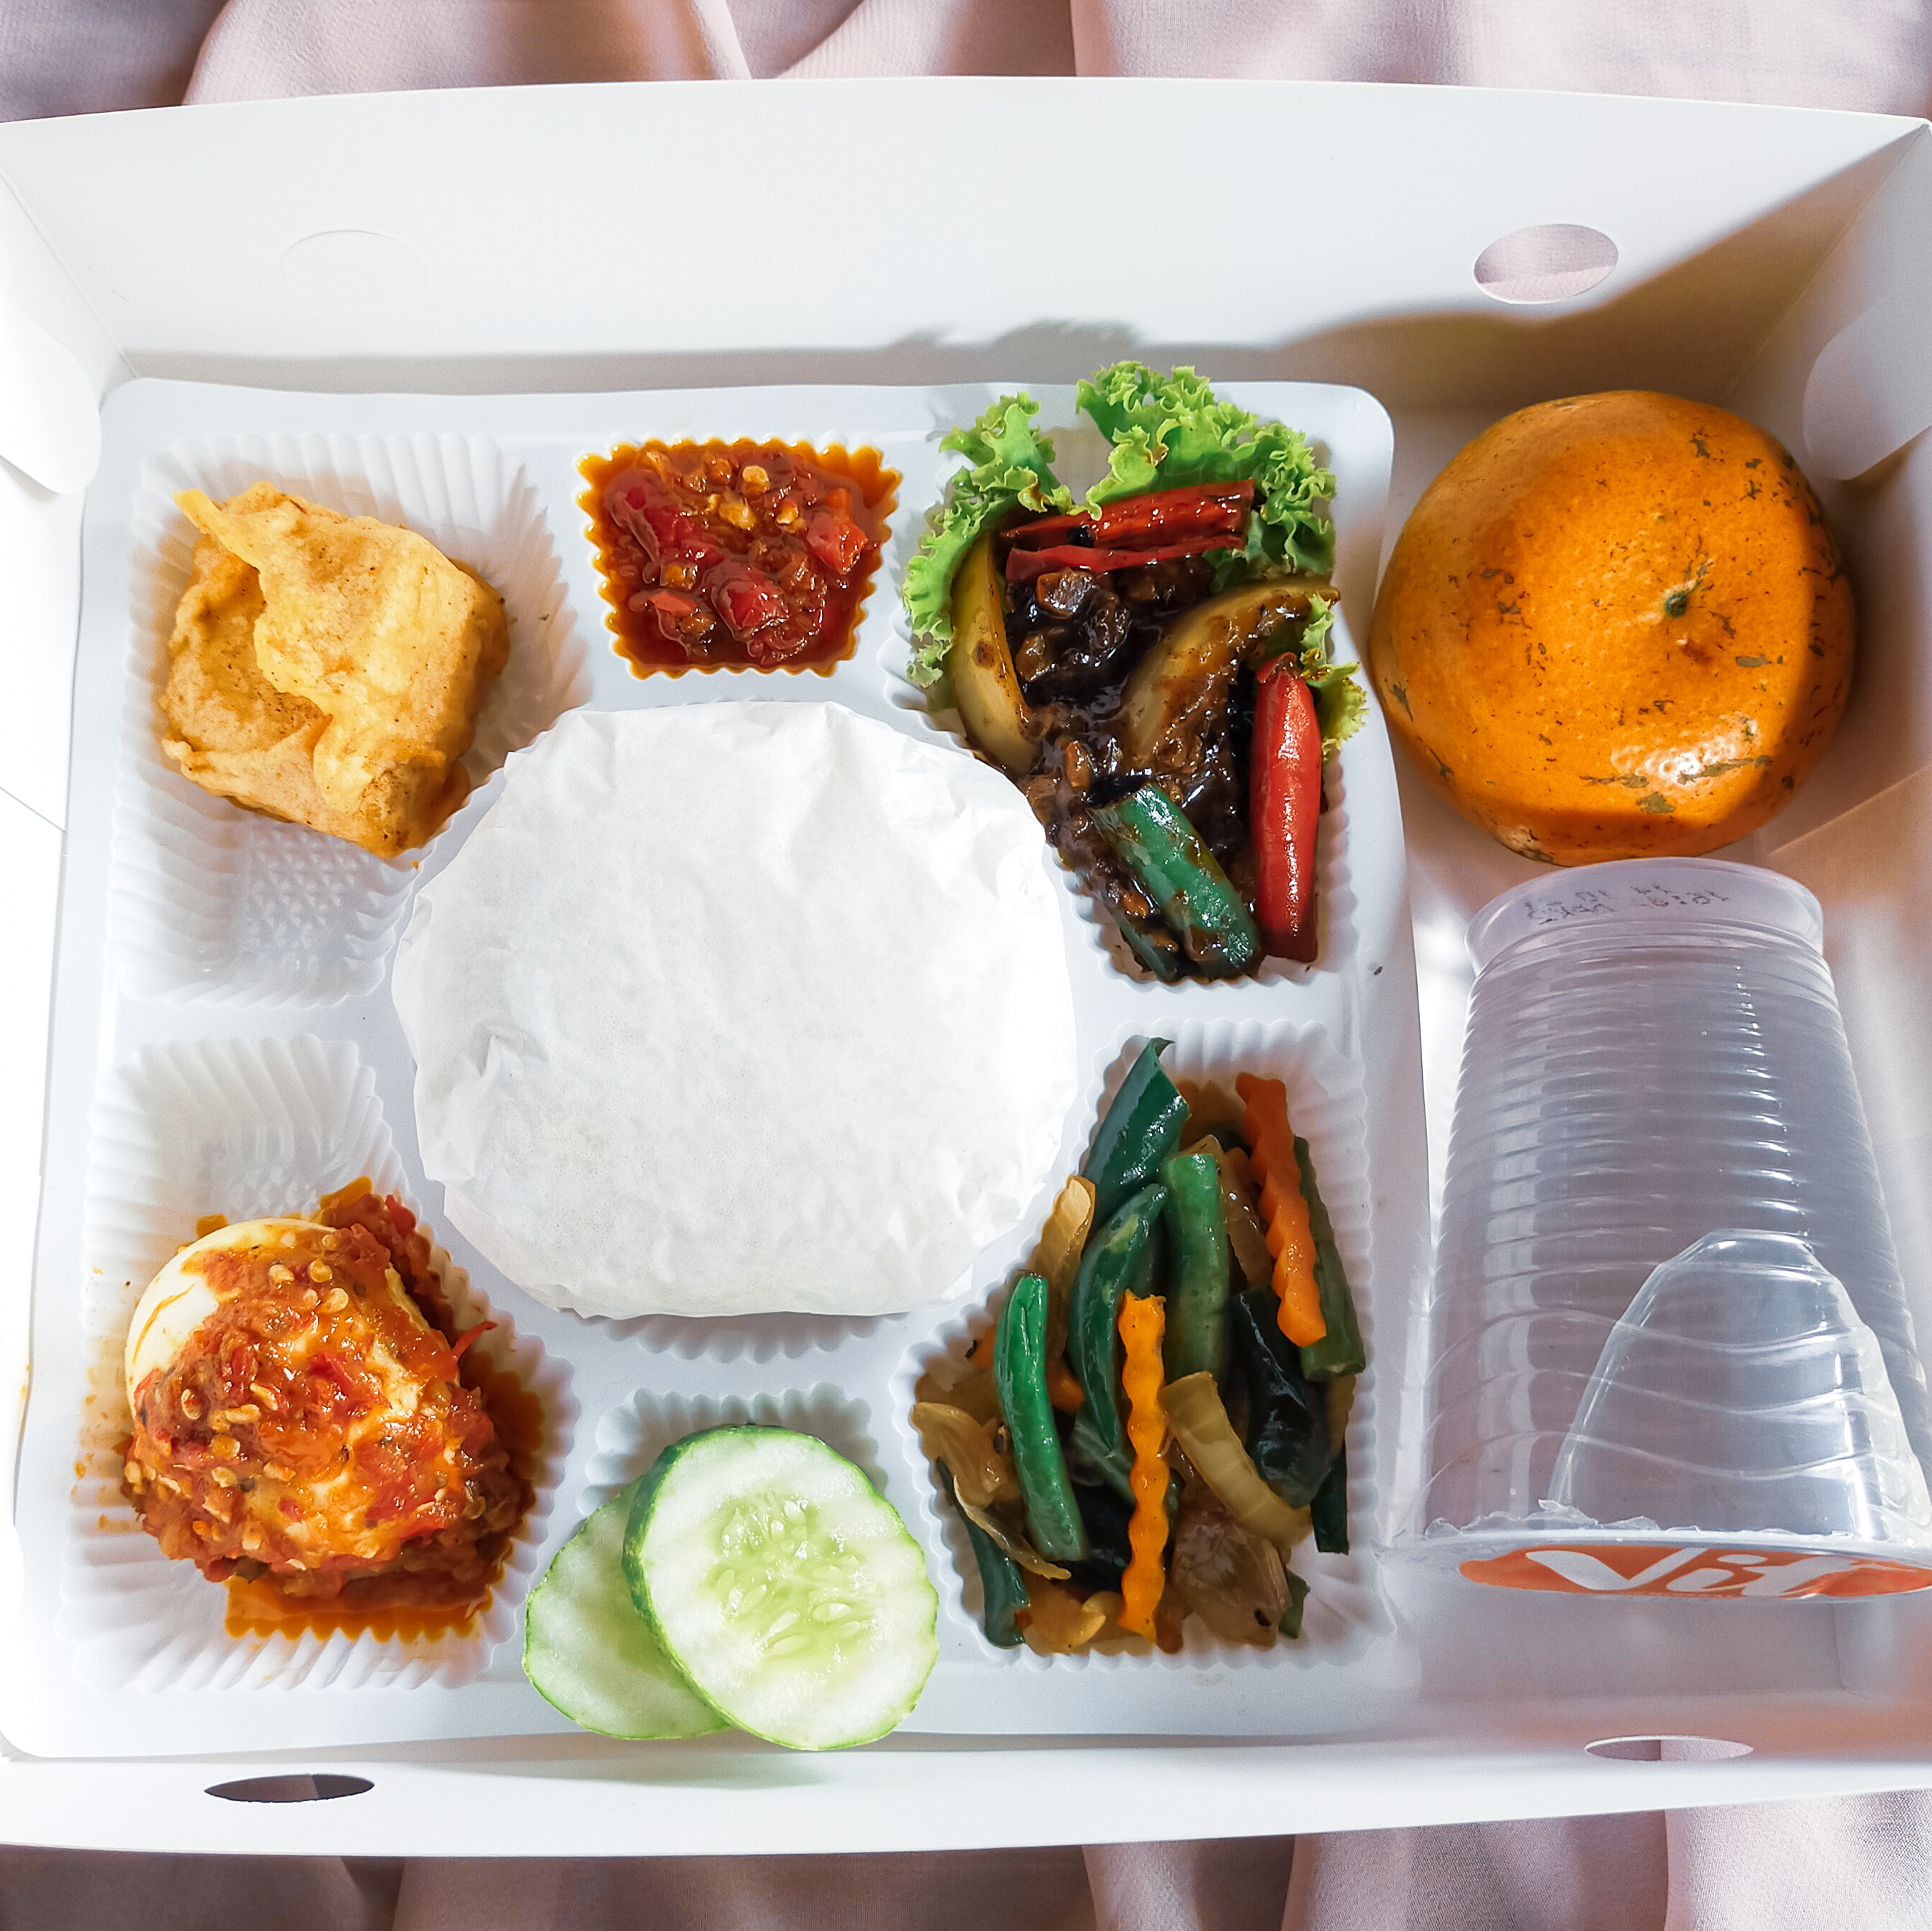 Paket Nasi Kotak 6 by Dapur Ukhtiya